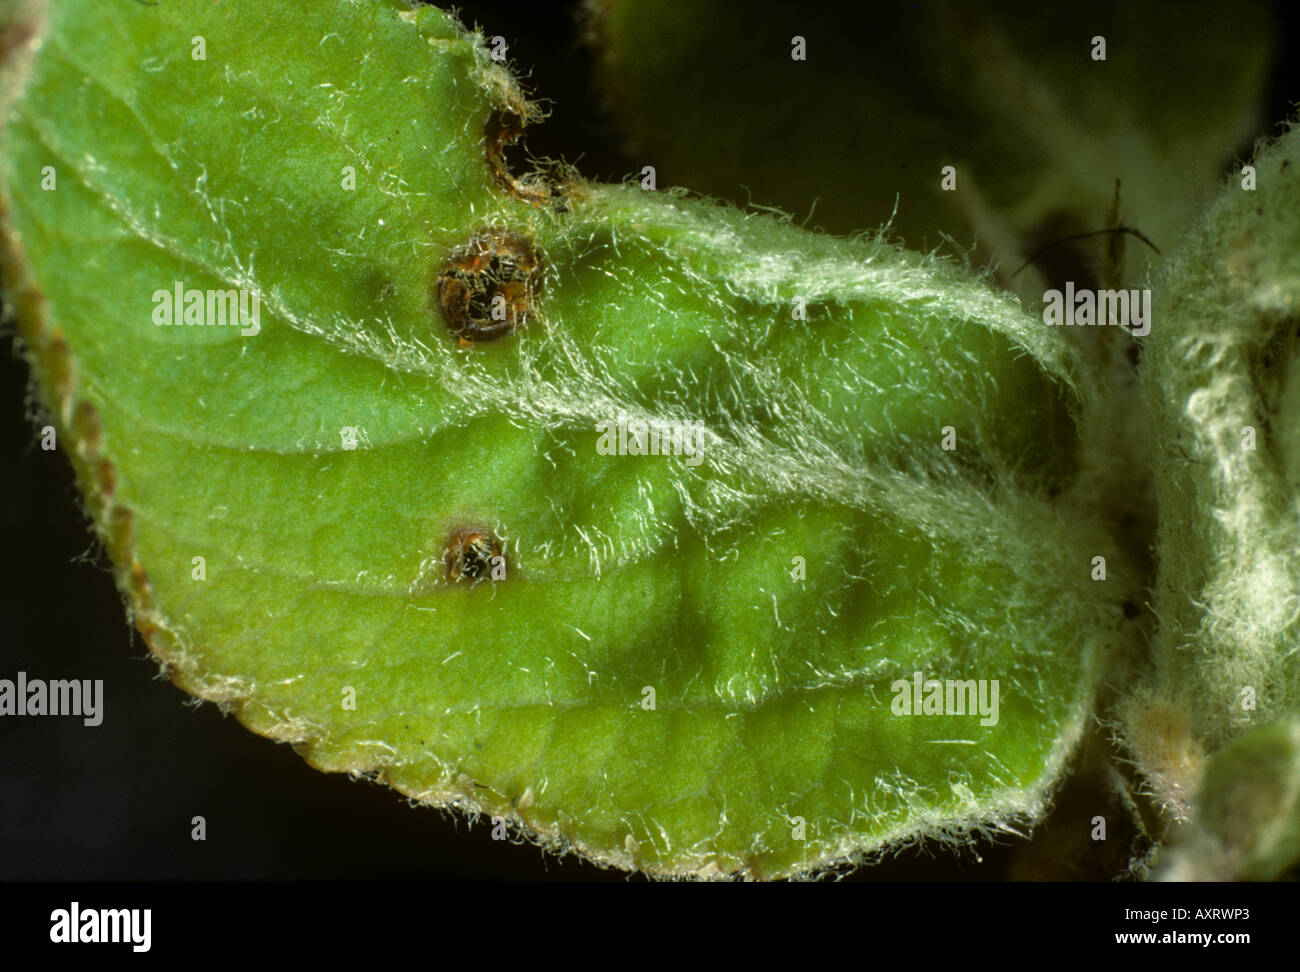 Danni al giovane foglia di apple da una falena invernale Operophtera brumata caterpillar a germogliata Foto Stock